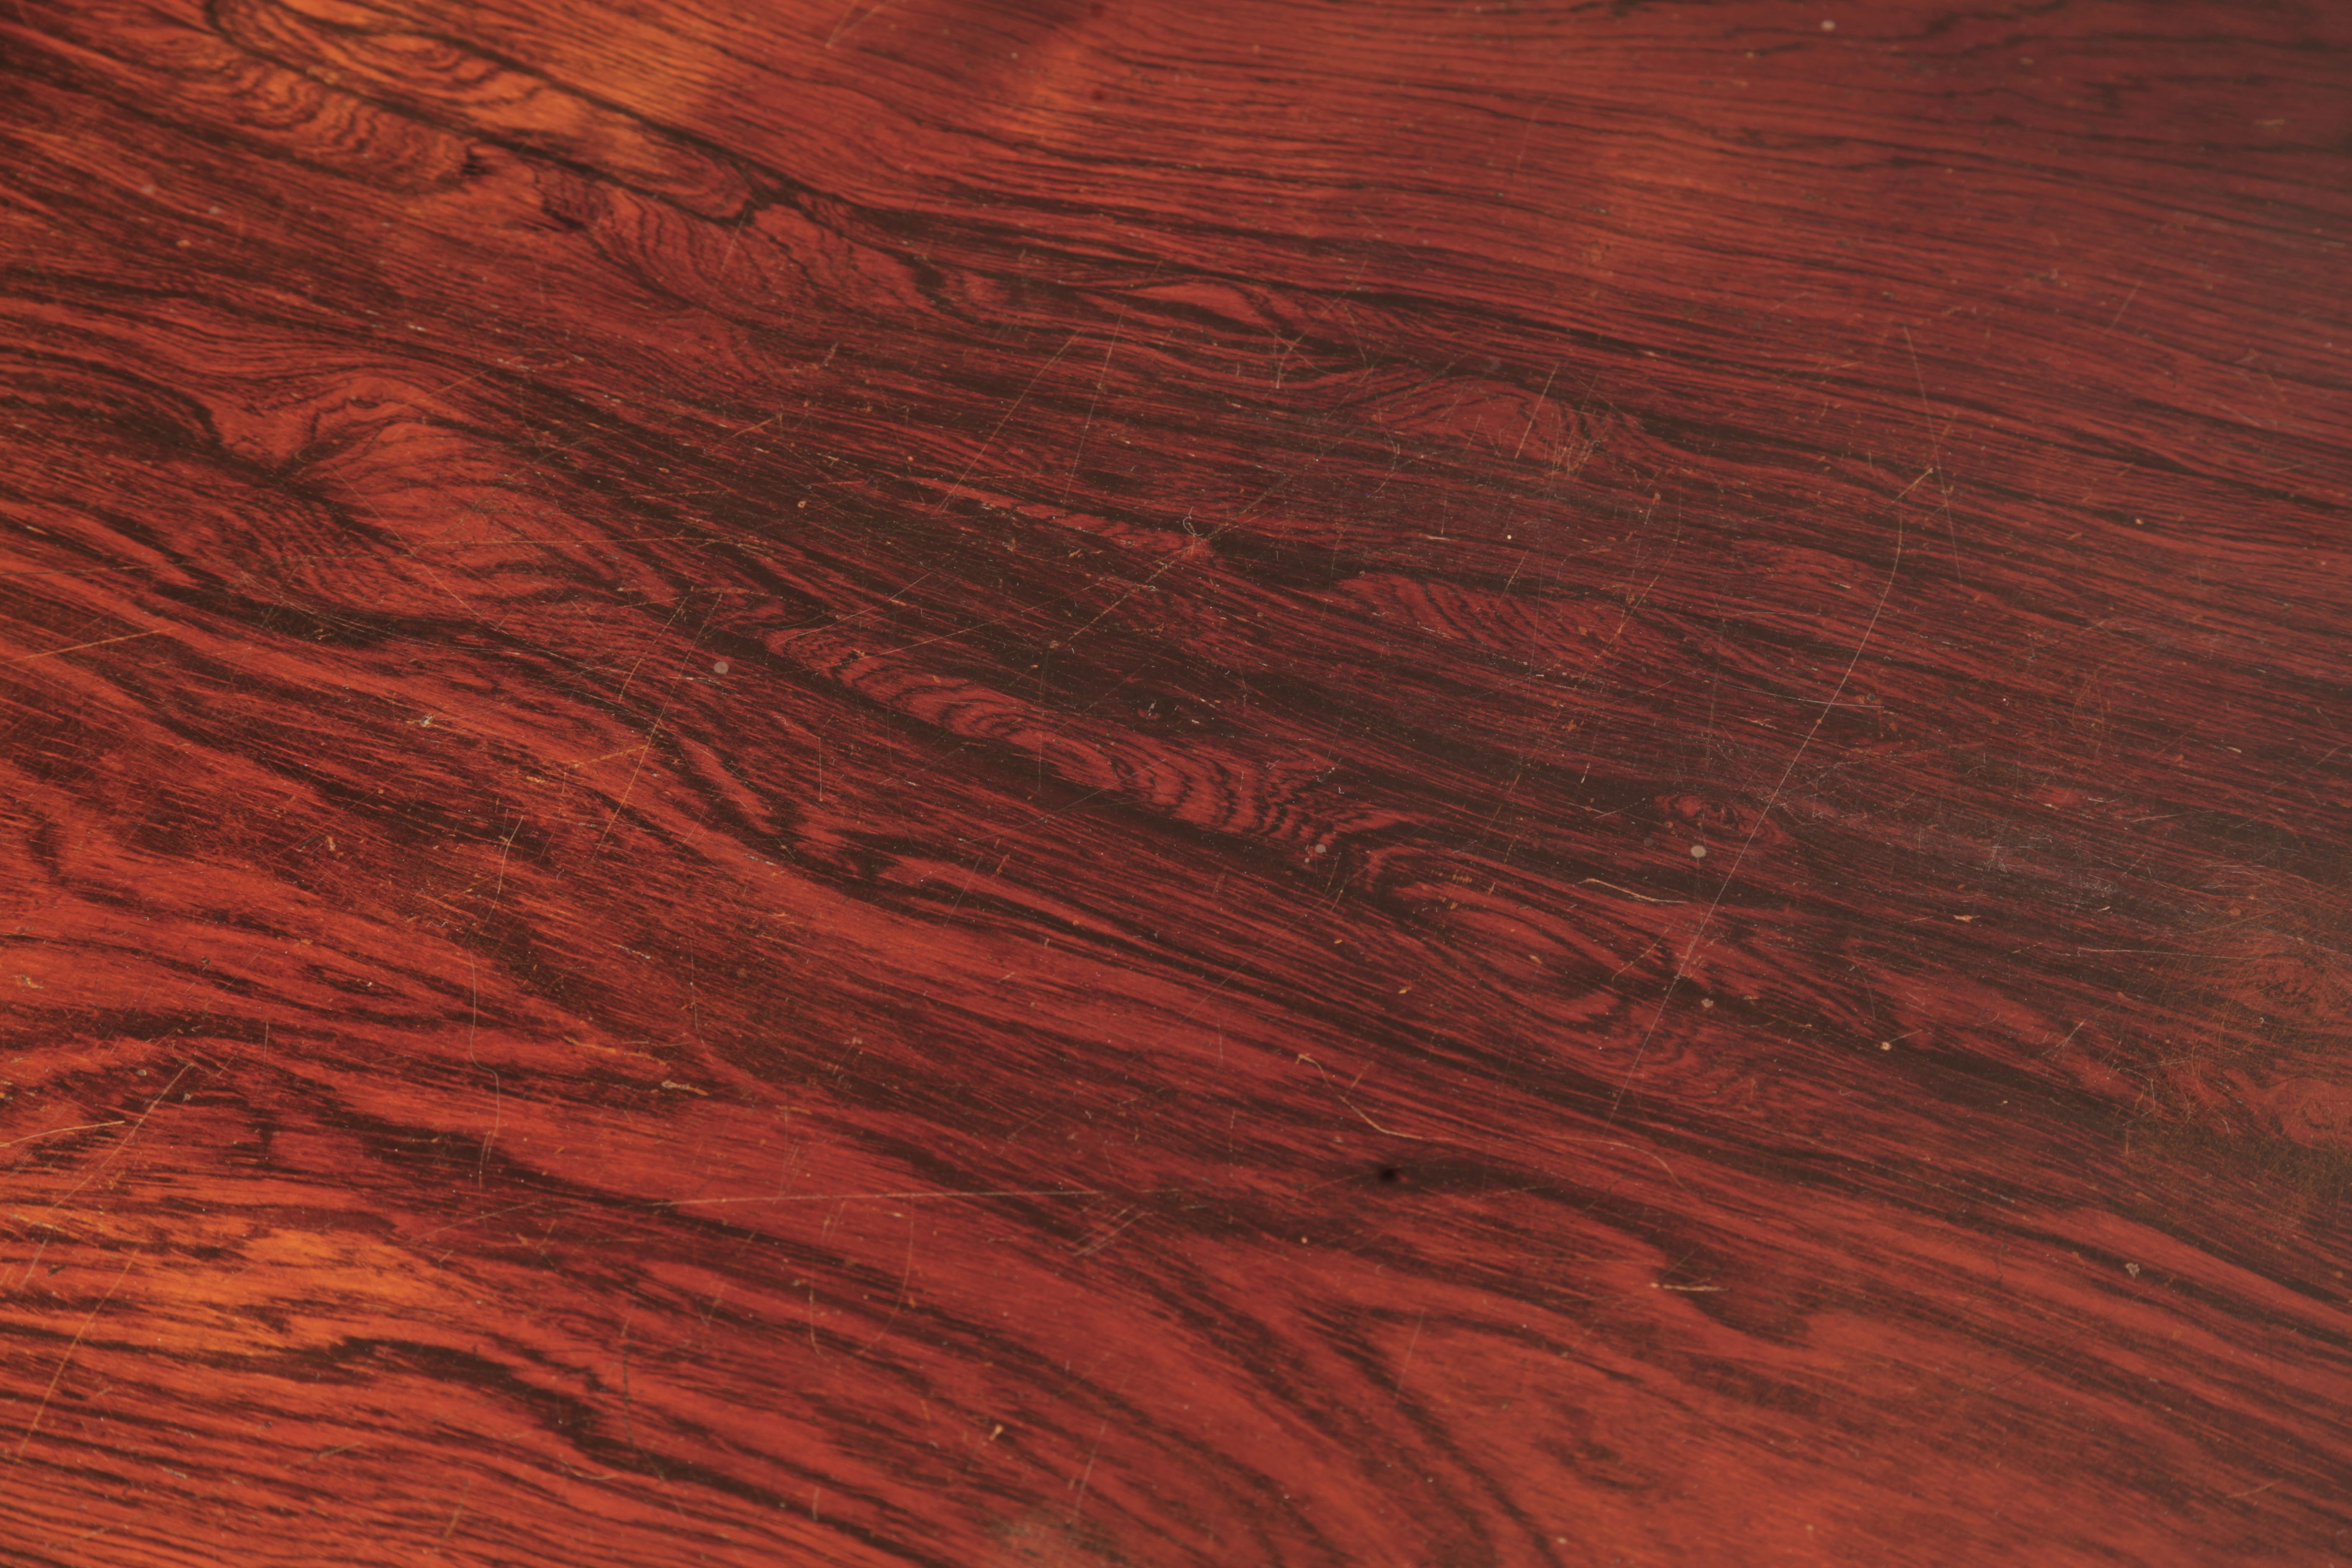 Steinway rosewood wood grain detail